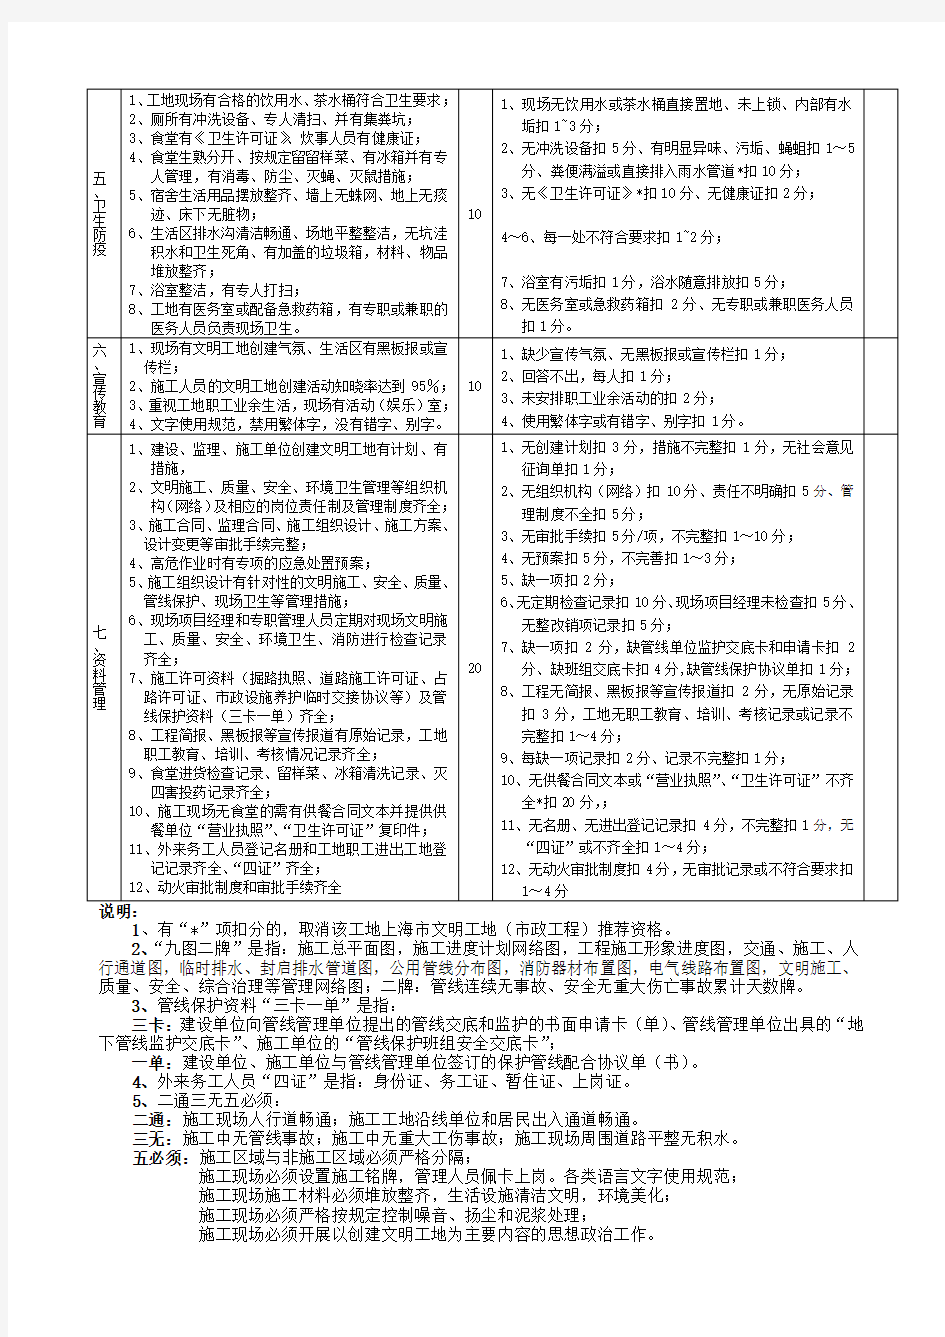 上海市(市政工程)文明工地评分标准